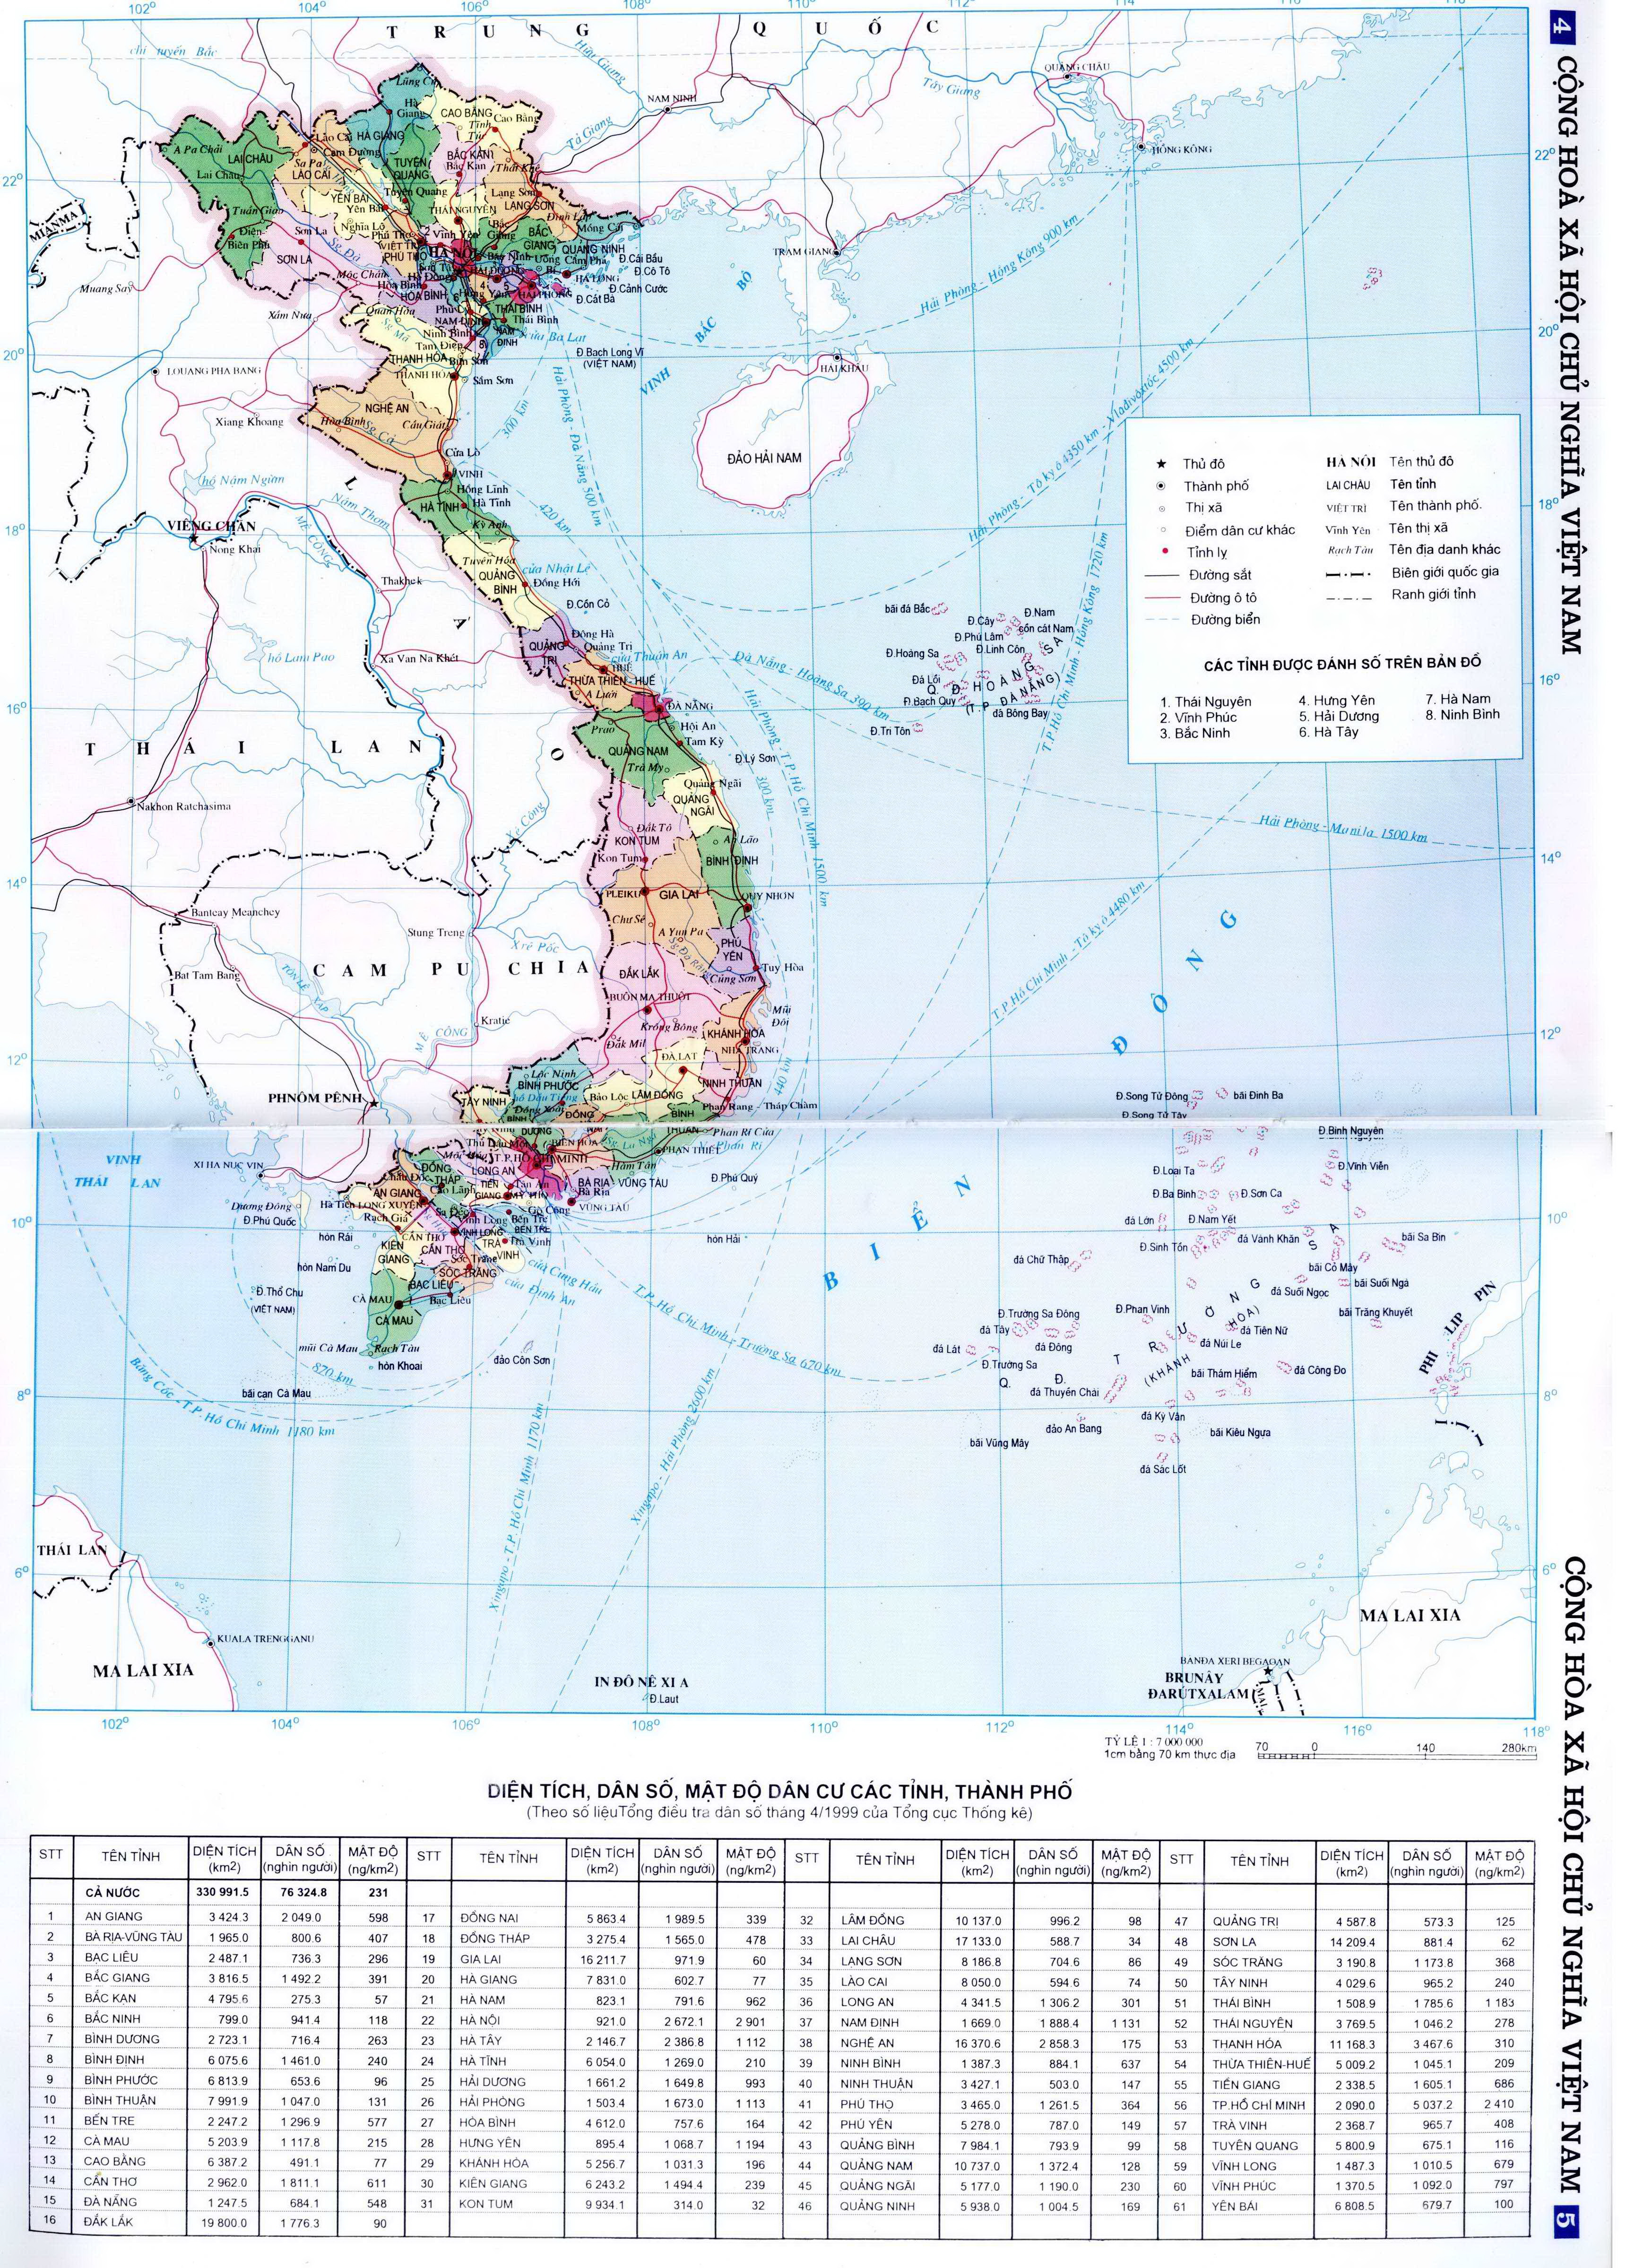 Bản đồ thống kê diện tích, dân số, mật độ dân cư các tính thành phố Việt Nam ( cỡ lớn )